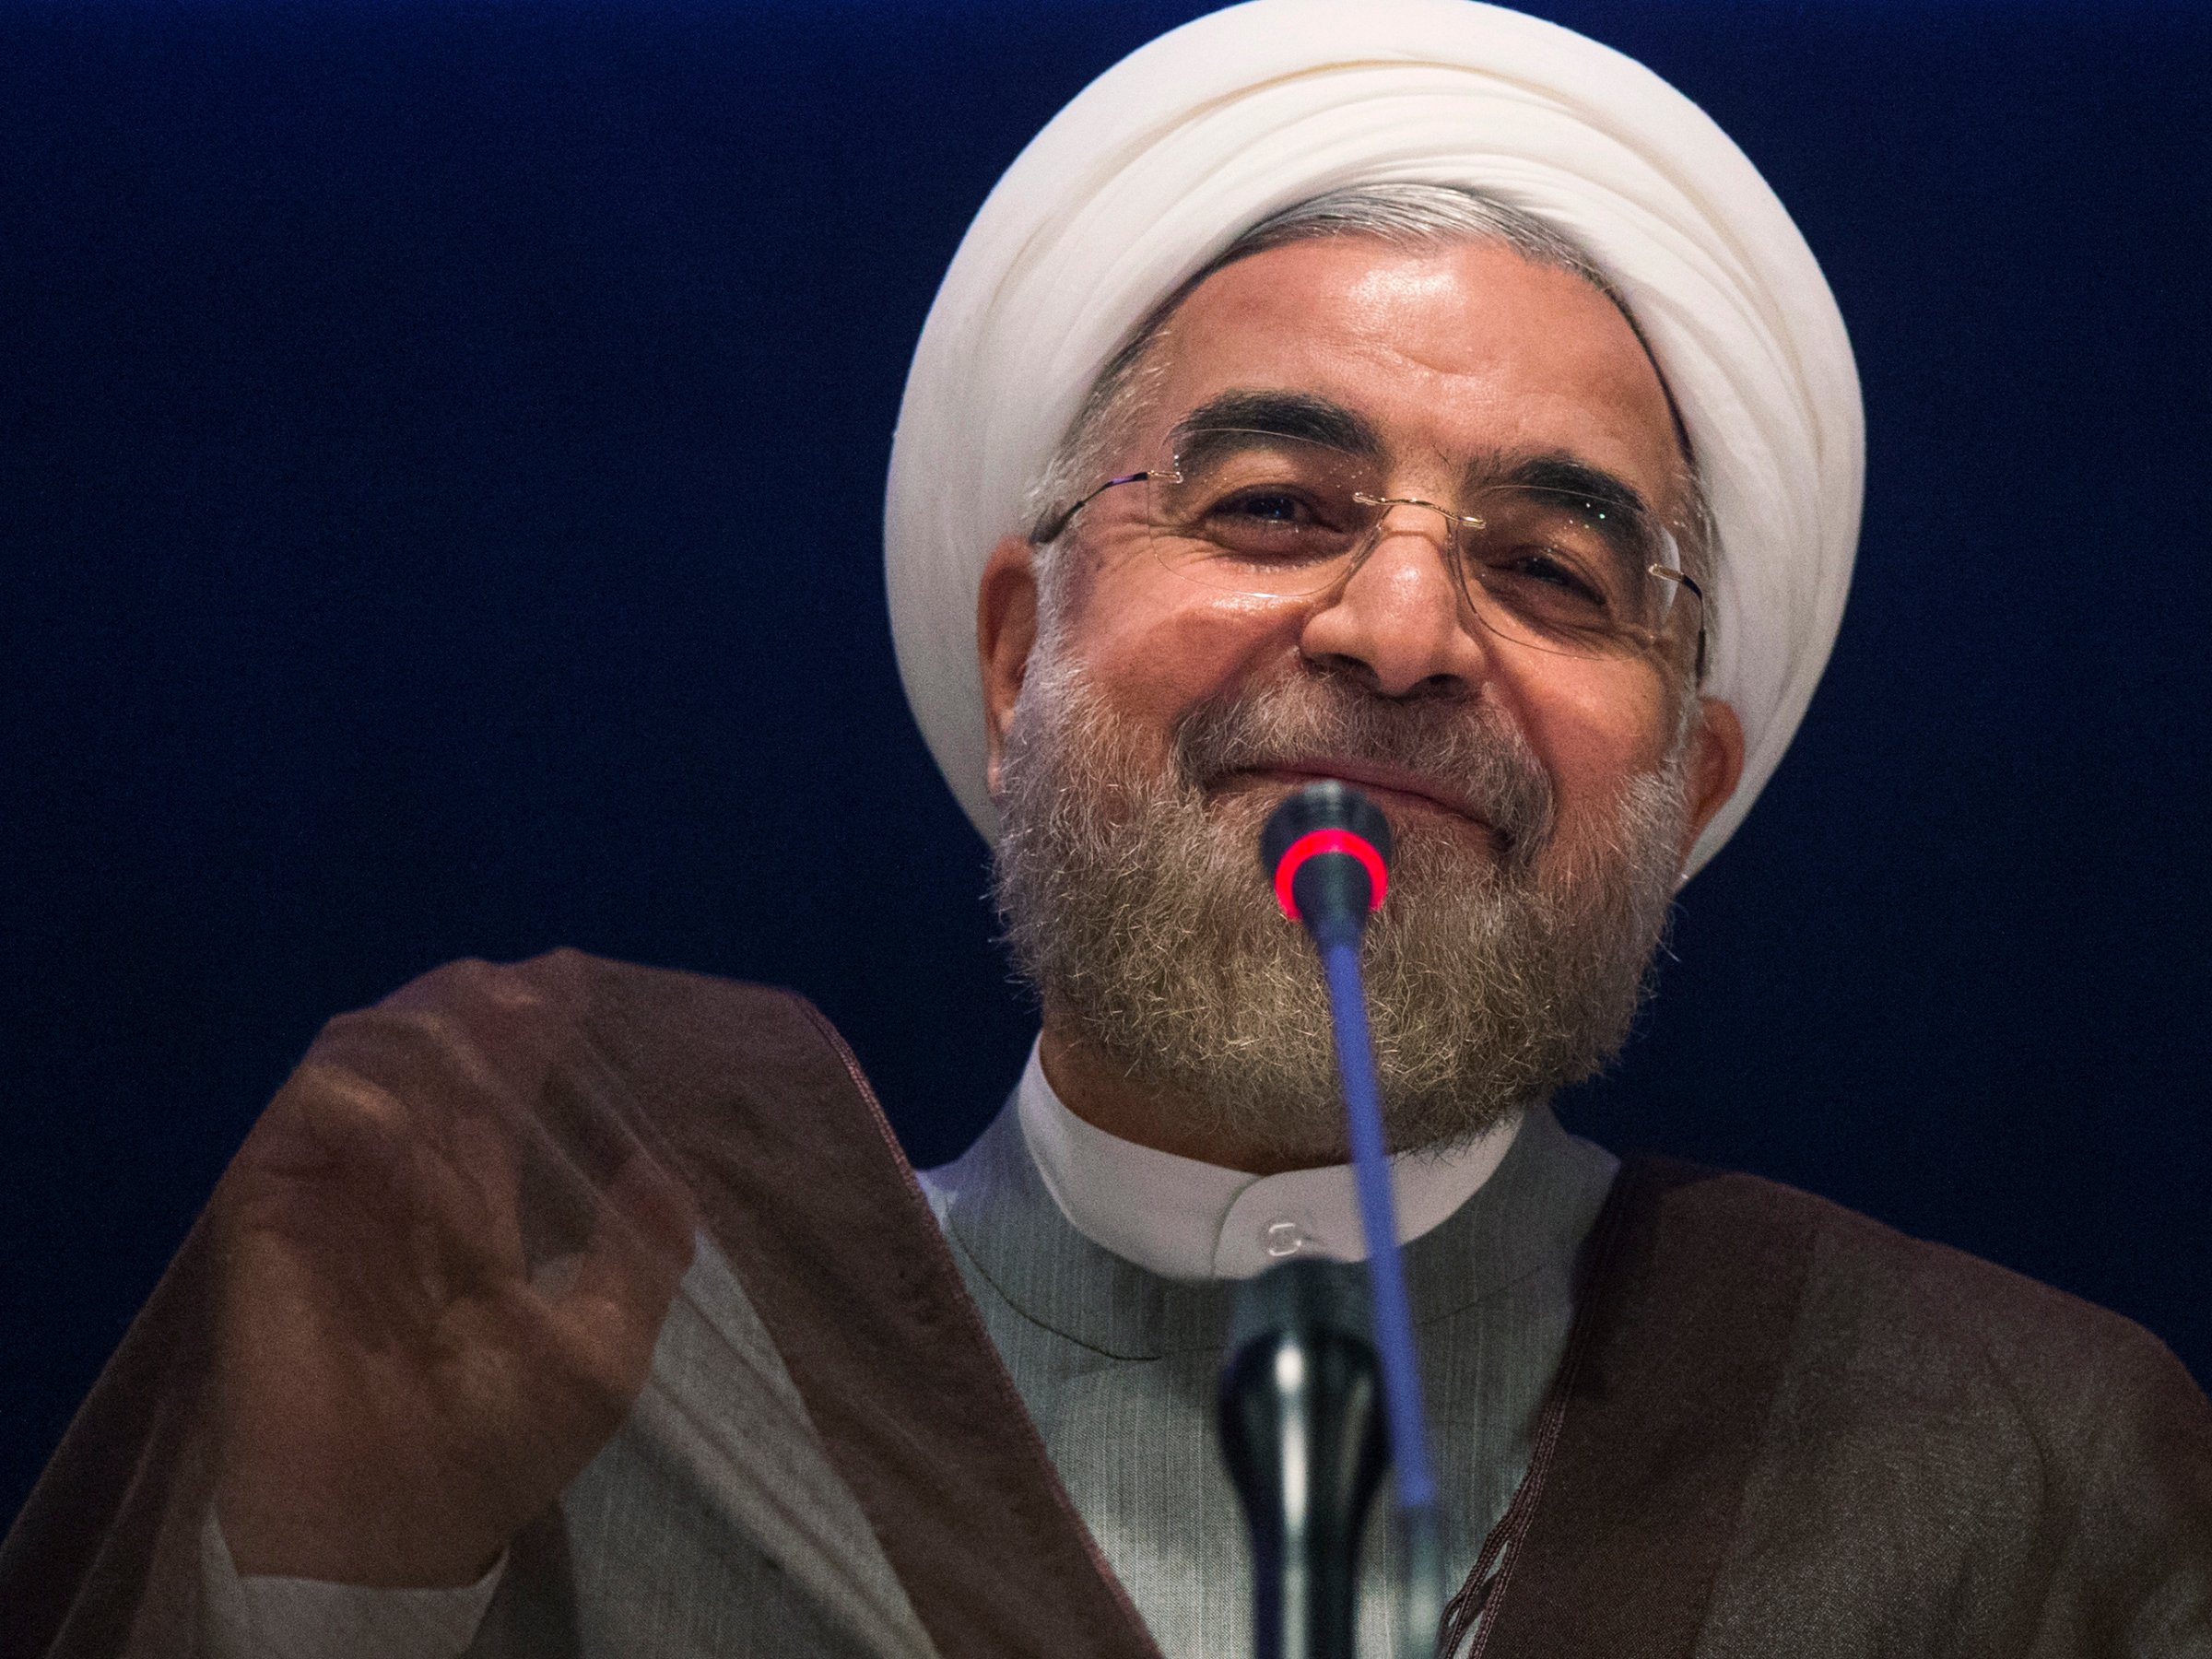 Rouhani: Iran backing constructive engagement to address crises